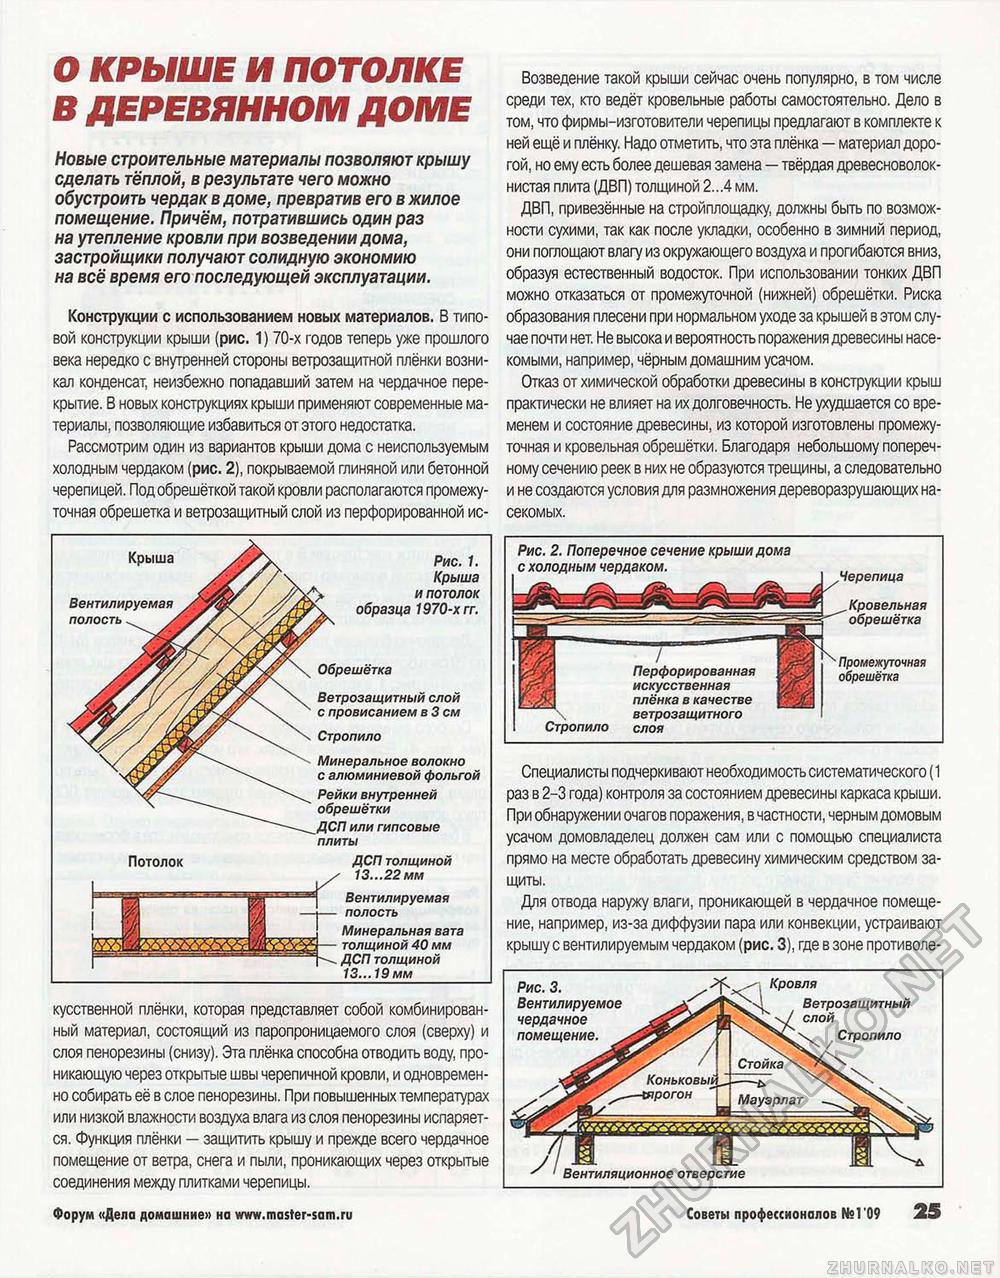 Советы профессионалов 2009-01, страница 25